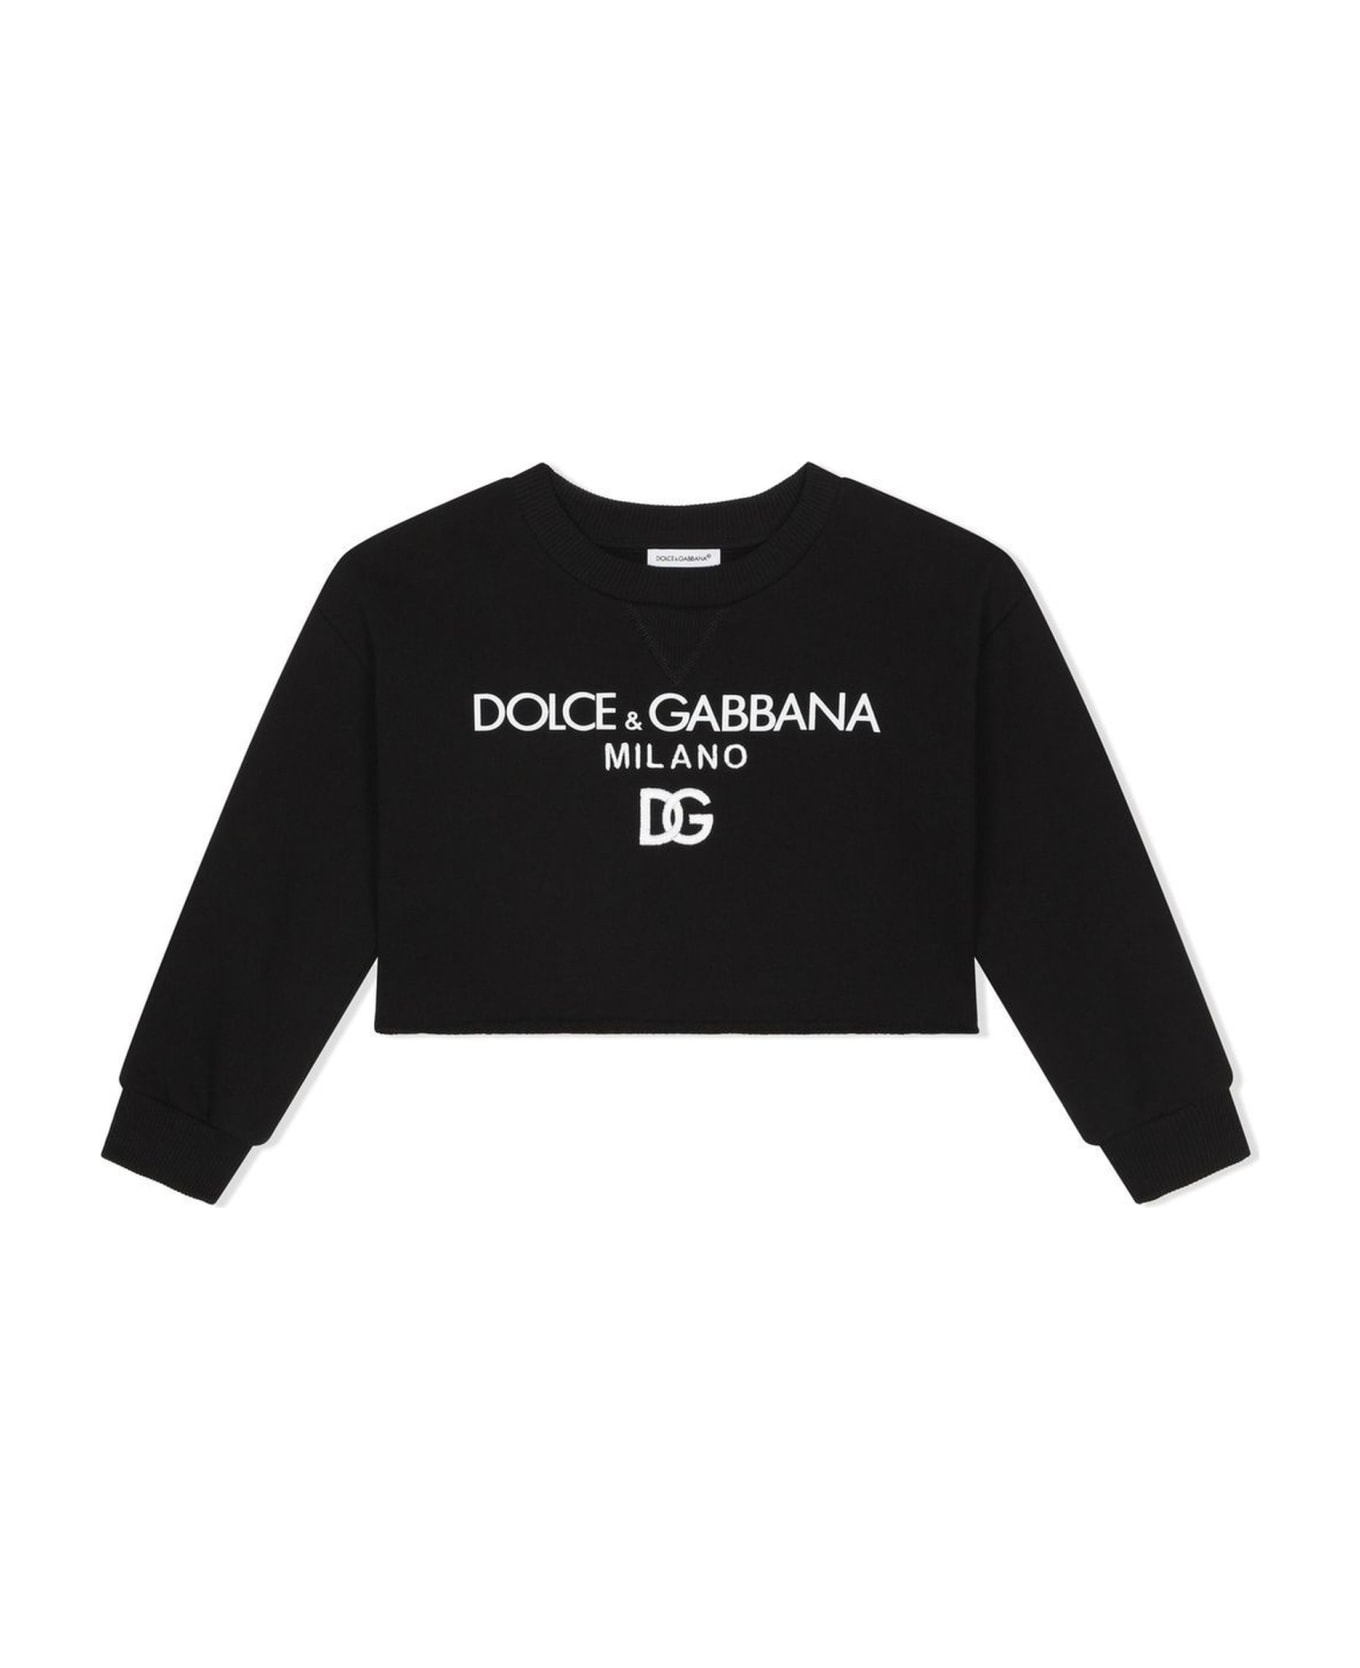 Dolce strapless & Gabbana Black Cotton Sweatshirt - Nero